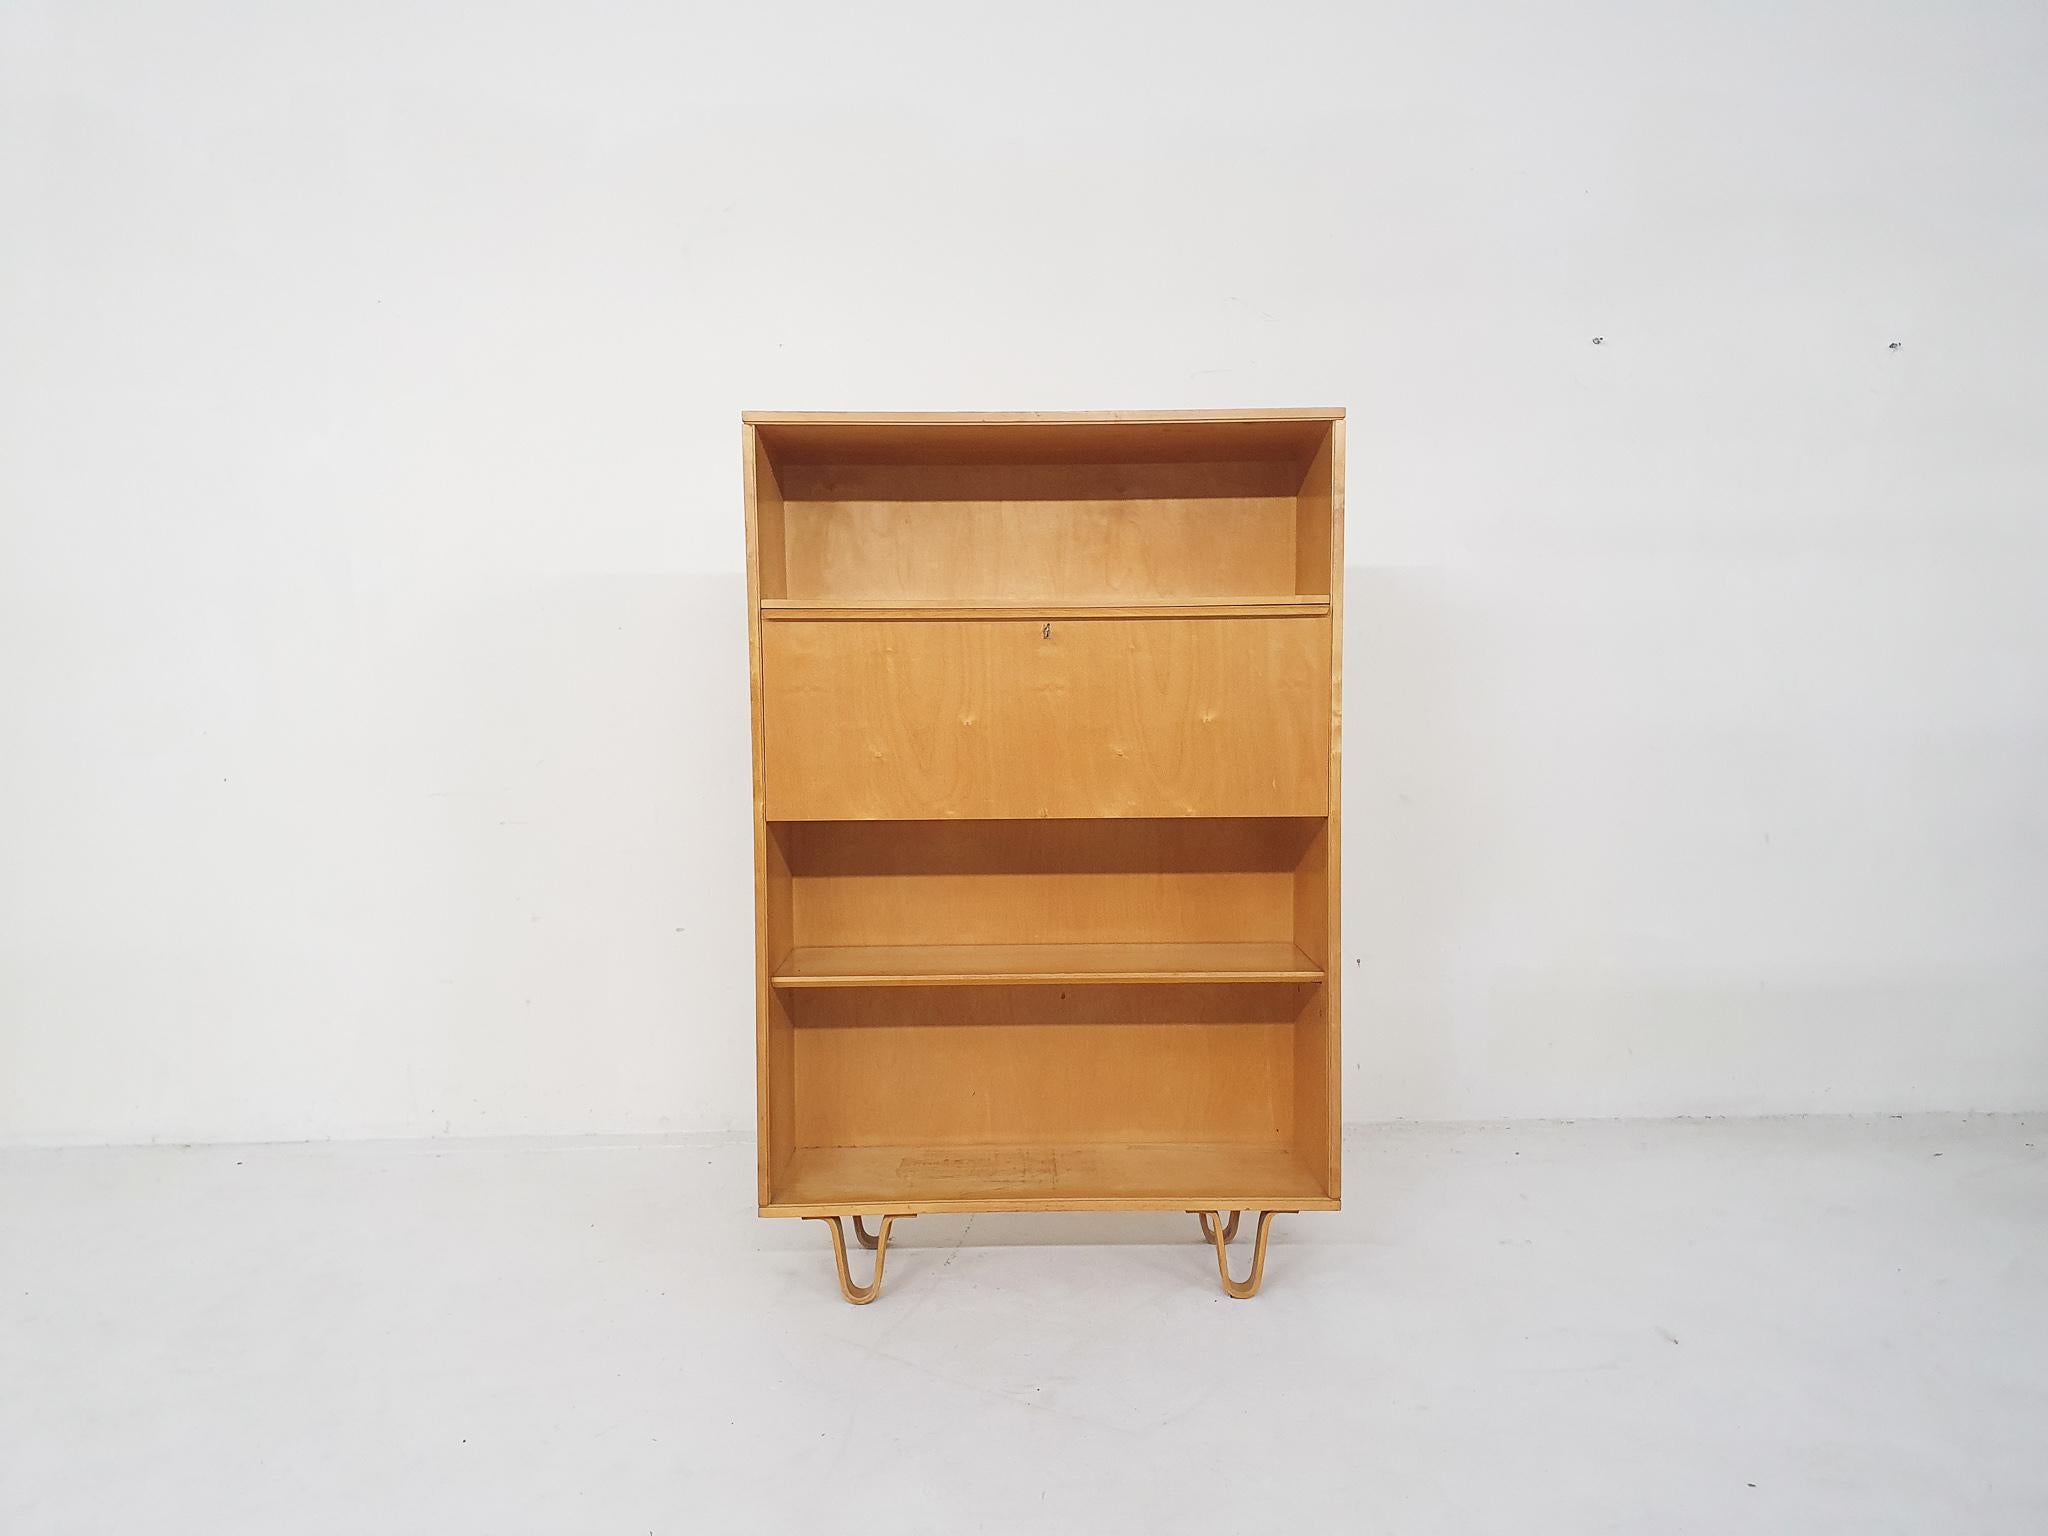 Bibliothèque en bouleau modèle BB04 conçue par Cees Braakman pour Pastoe en 1952.
Le clapet peut également être utilisé comme bureau.
La surface et un côté du meuble ont été poncés et polis.
Quelques traces d'utilisation sur les étagères.

Cees